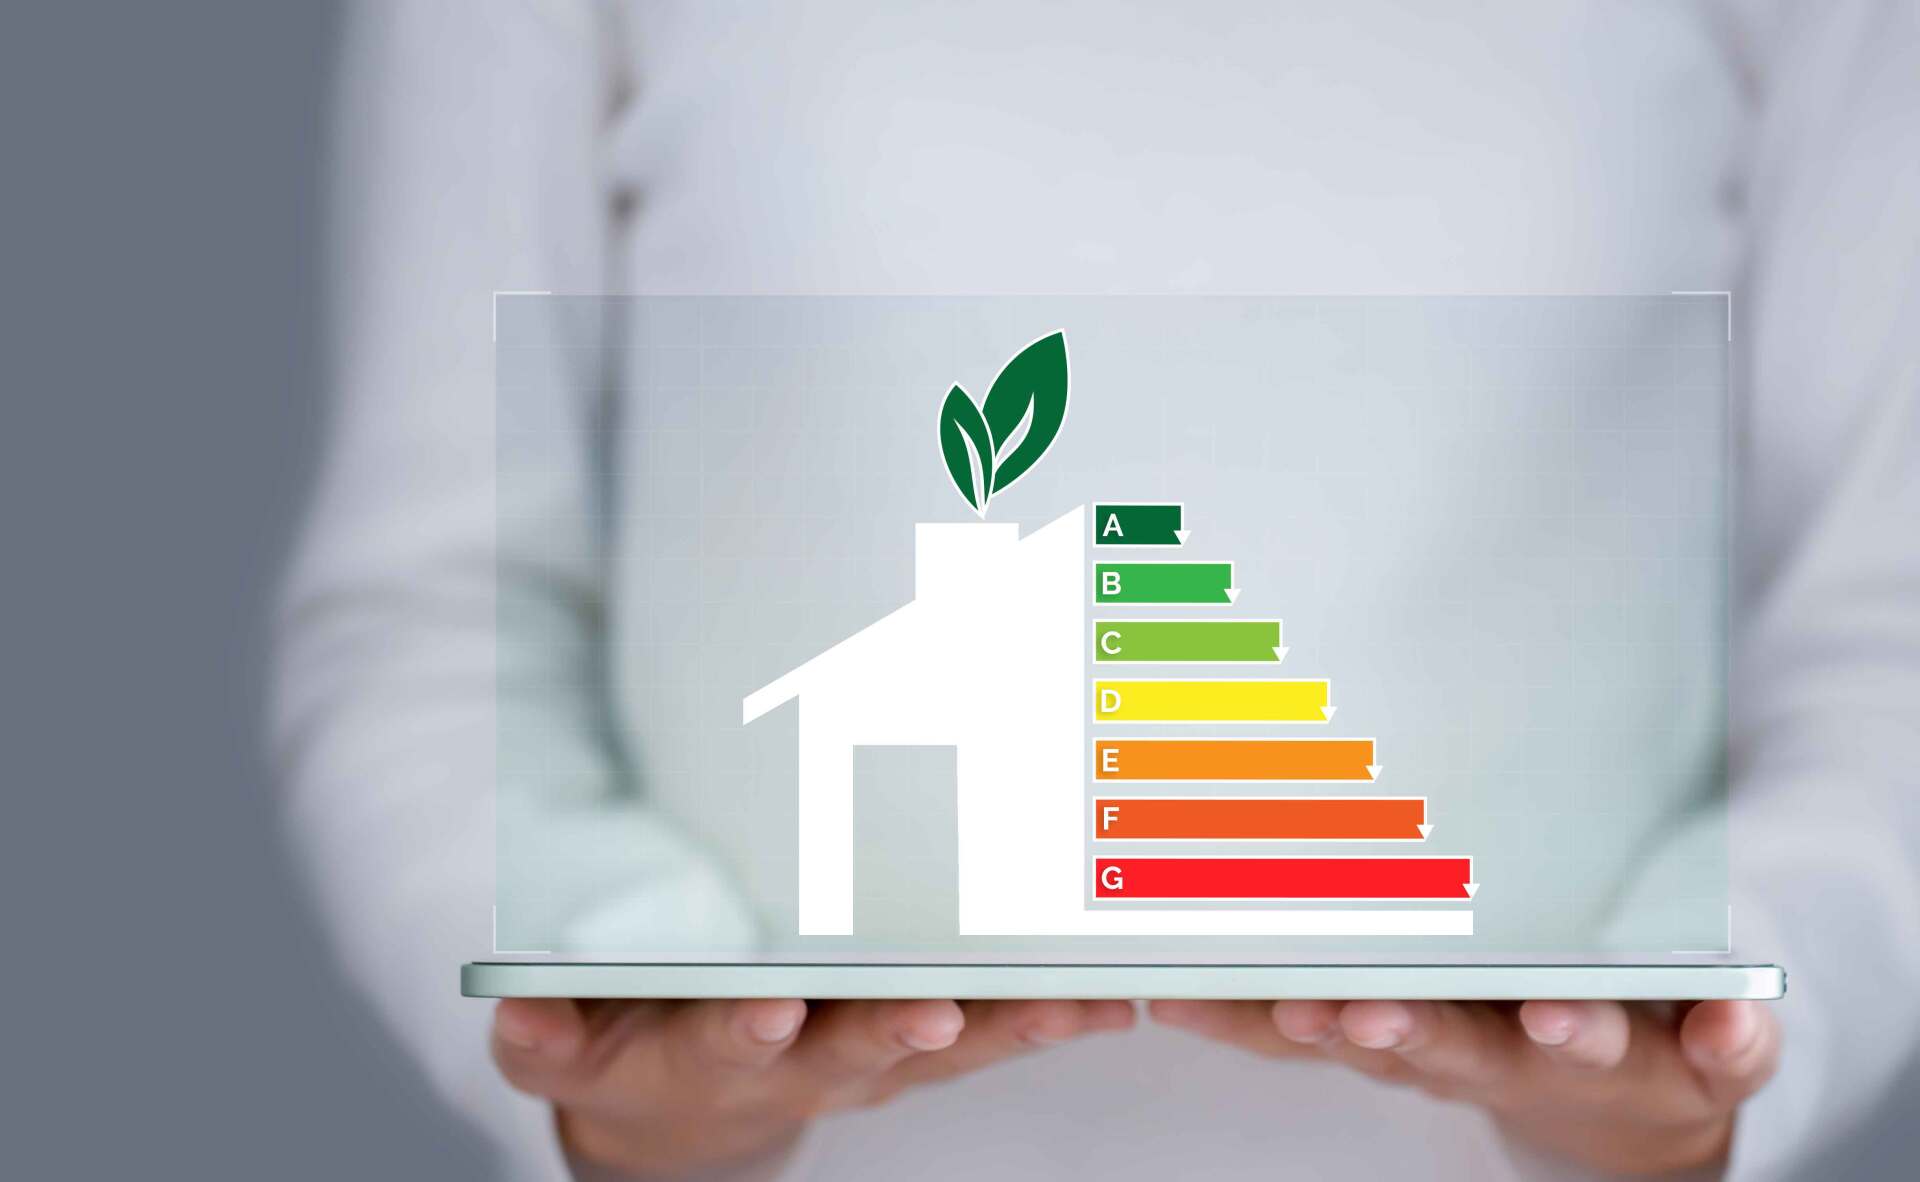 Une personne tenant une plaque transparente avec dessus un diagramme représentant une maison et les 7 différents niveaux de consommation d'énergie colorés du vert au rouge